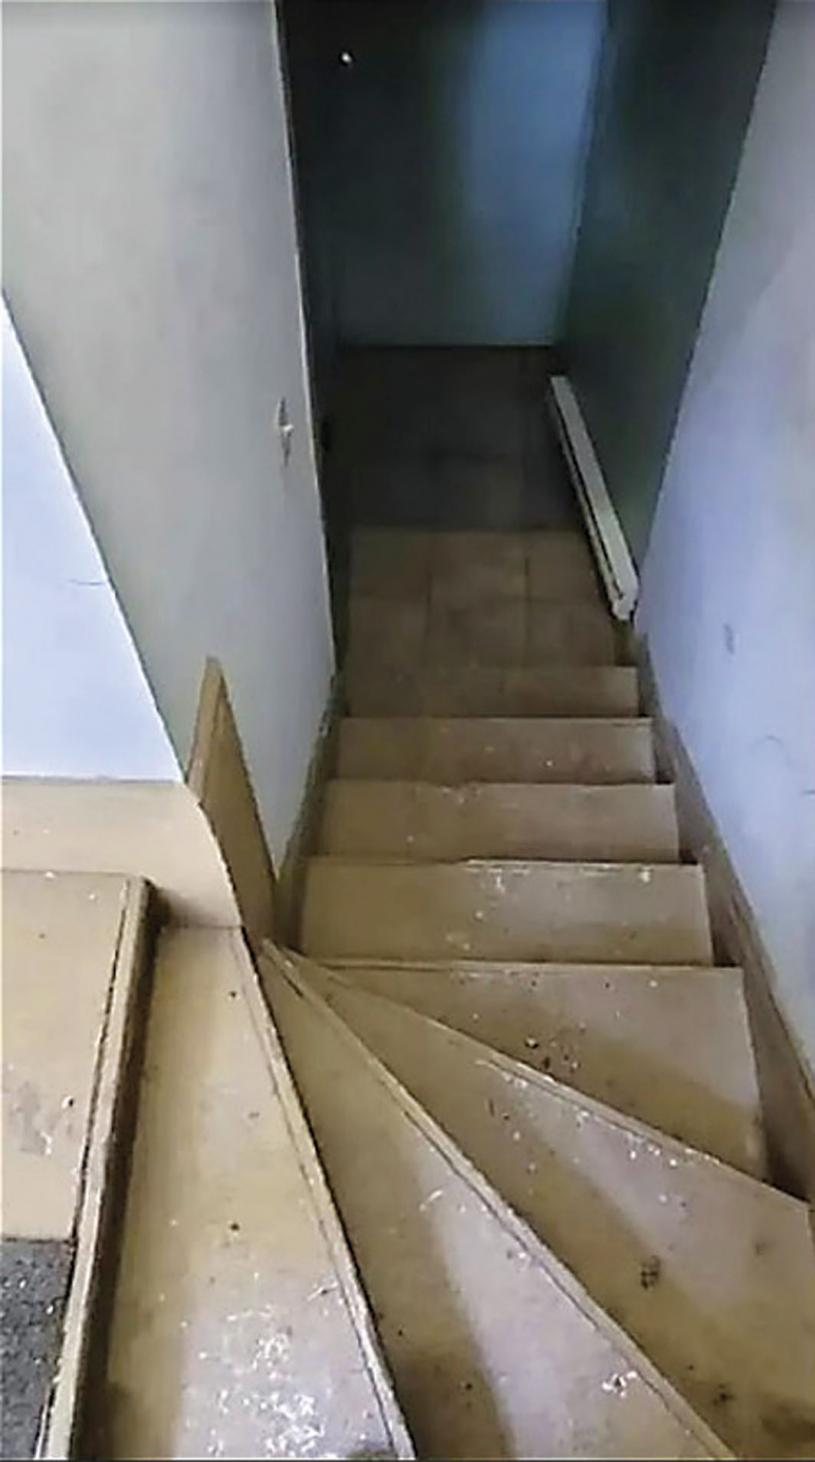 ■入口樓梯看上去令人毛骨悚然。 Kijiji網站